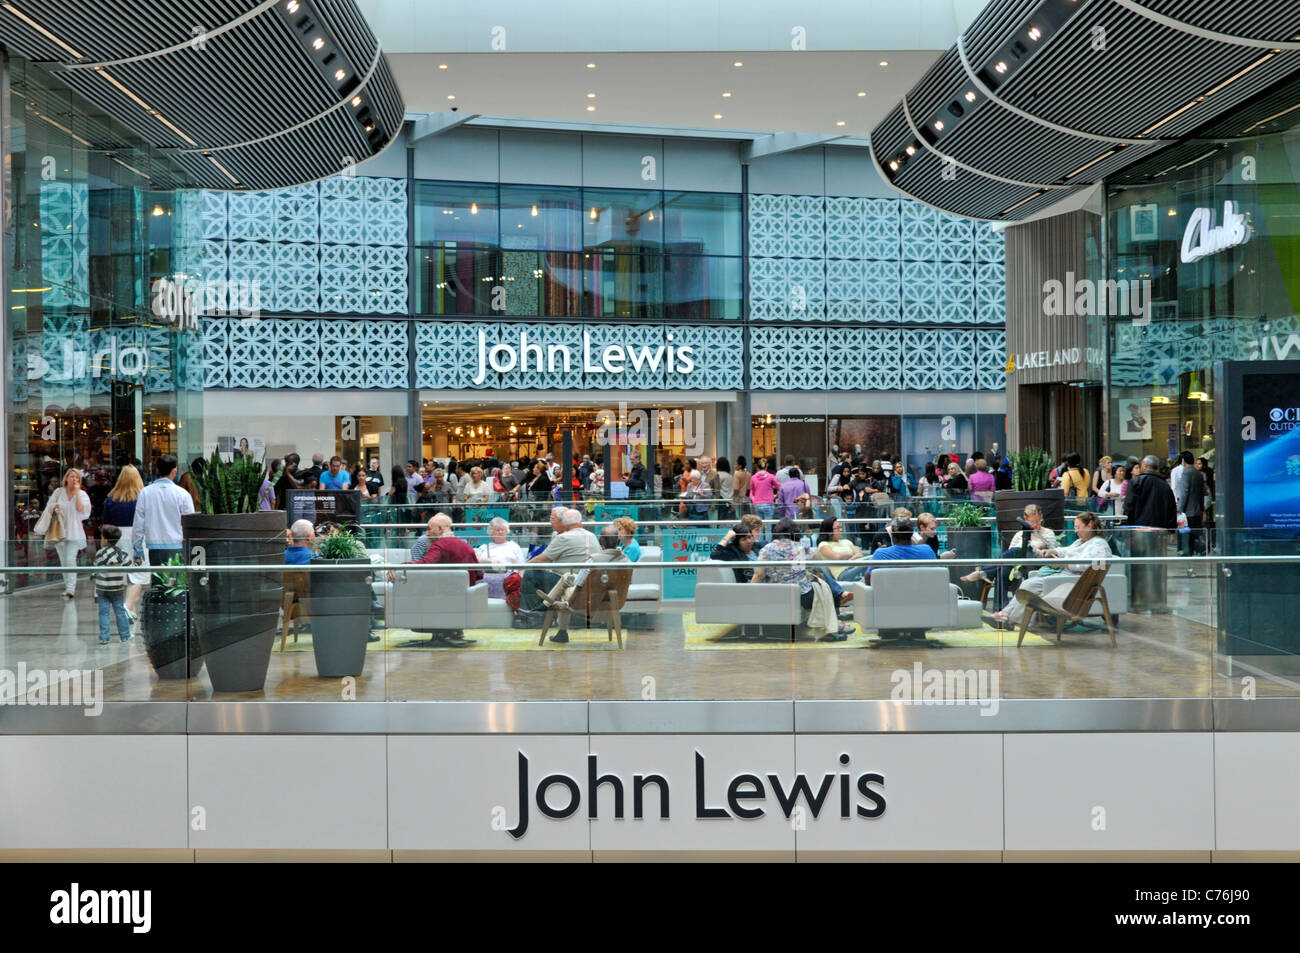 Persone seduti all'interno del centro commerciale all'ingresso di John Lewis Grandi magazzini presso il centro commerciale Westfield Stratford City East London Inghilterra Regno Unito Foto Stock